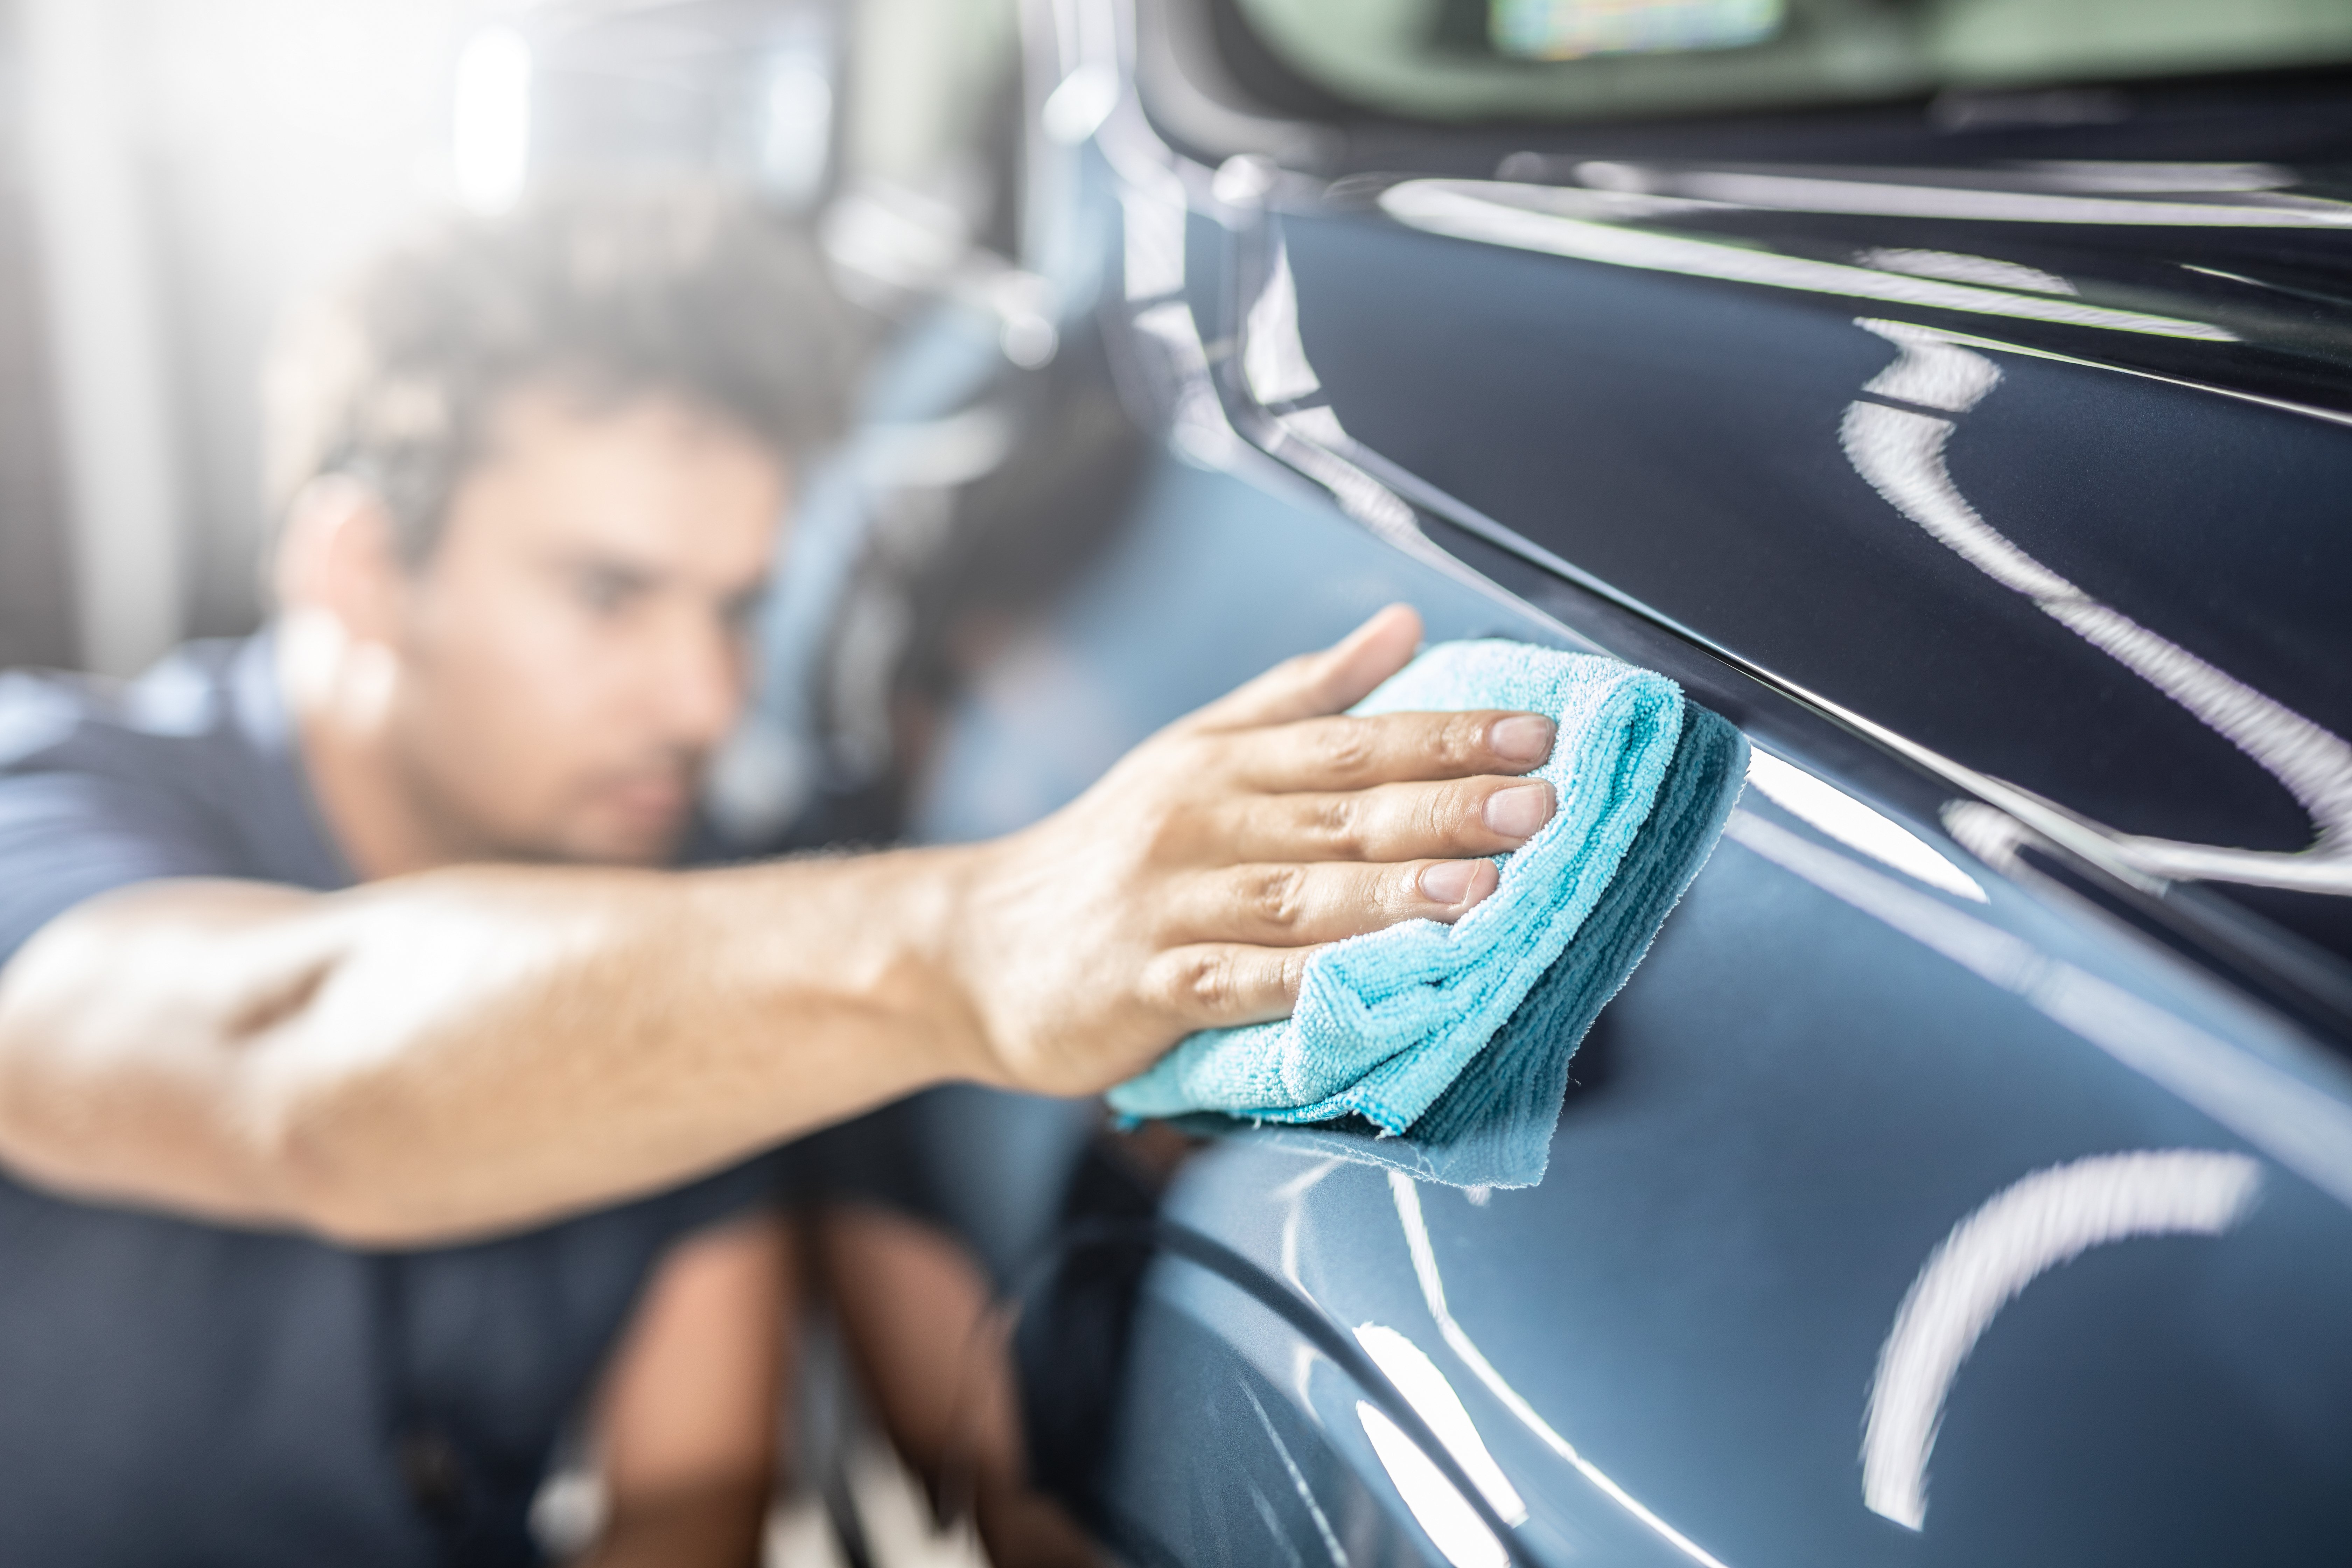 Comment réparer soi-même une bosse sur sa voiture ?